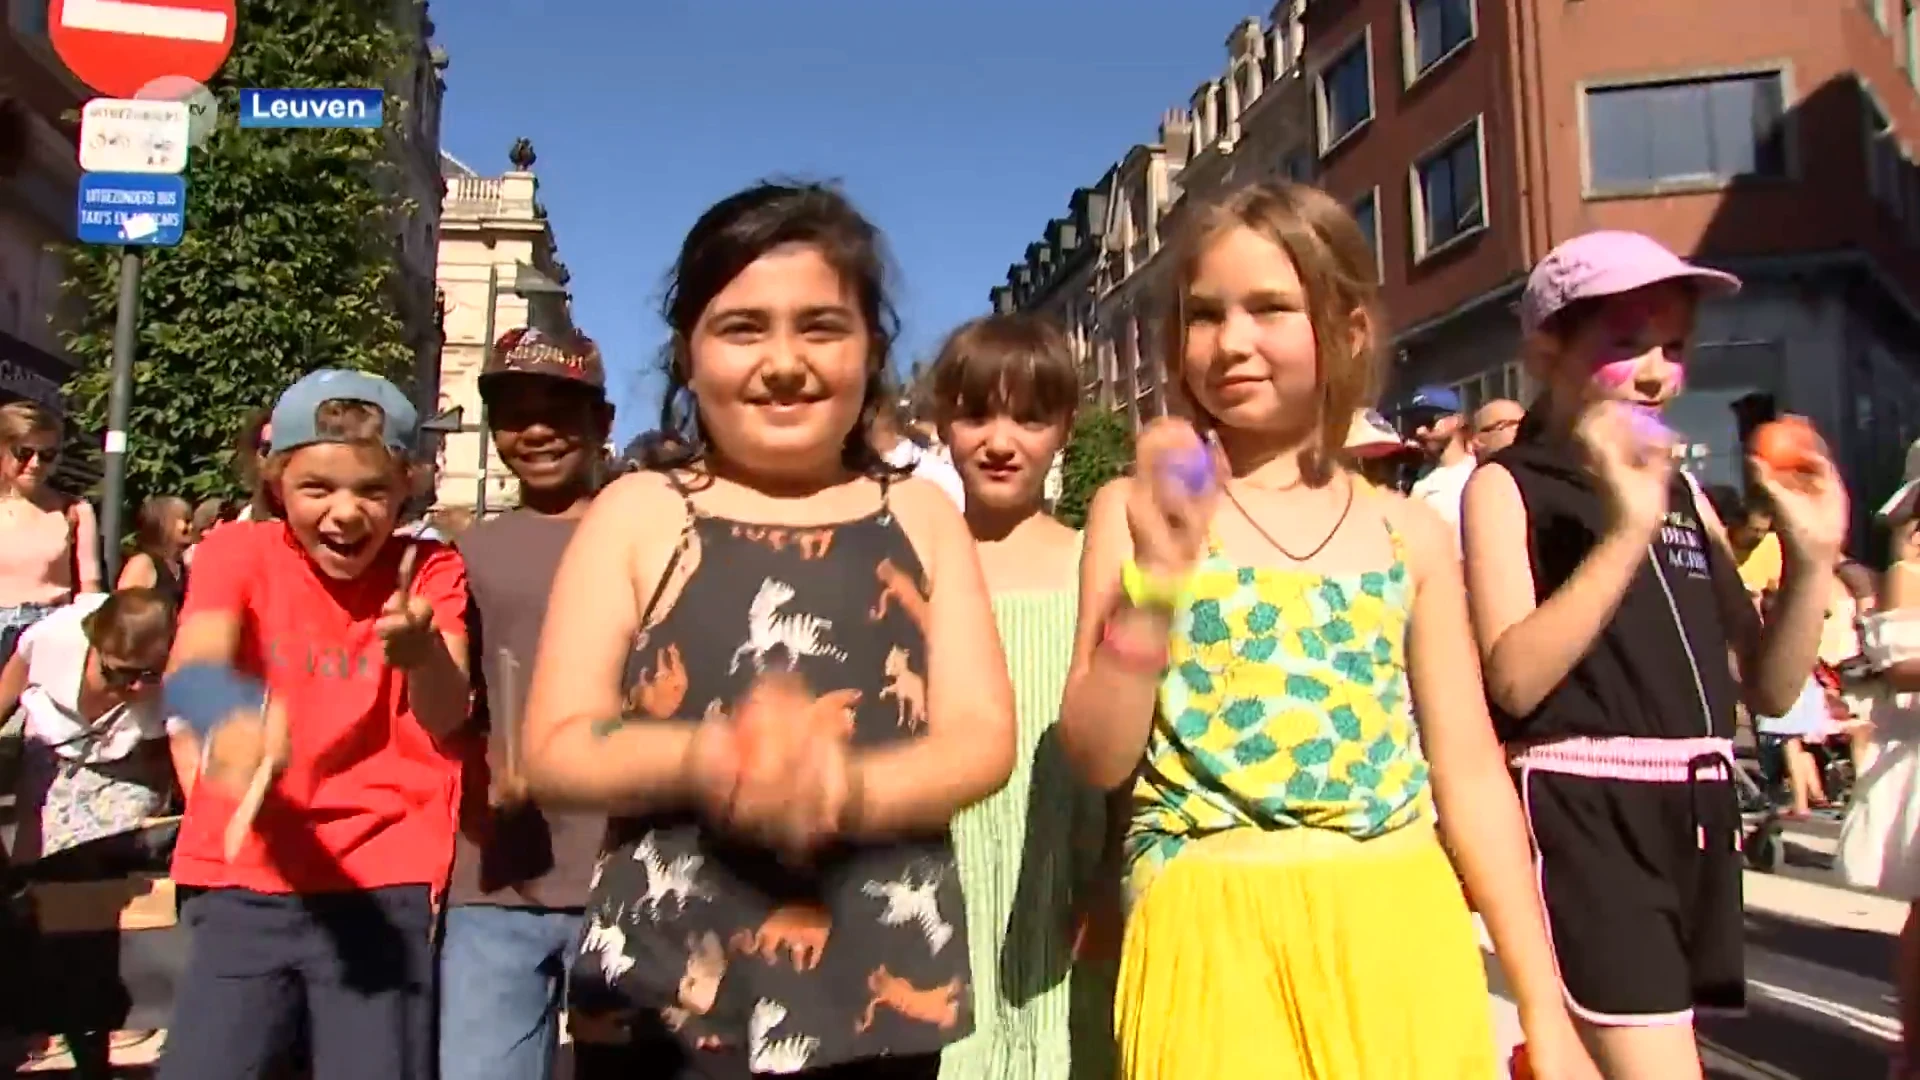 Langste Dag in Leuven brengt veel mensen op de been: "Leuk om met de kinderen naar het centrum te komen om te dansen"